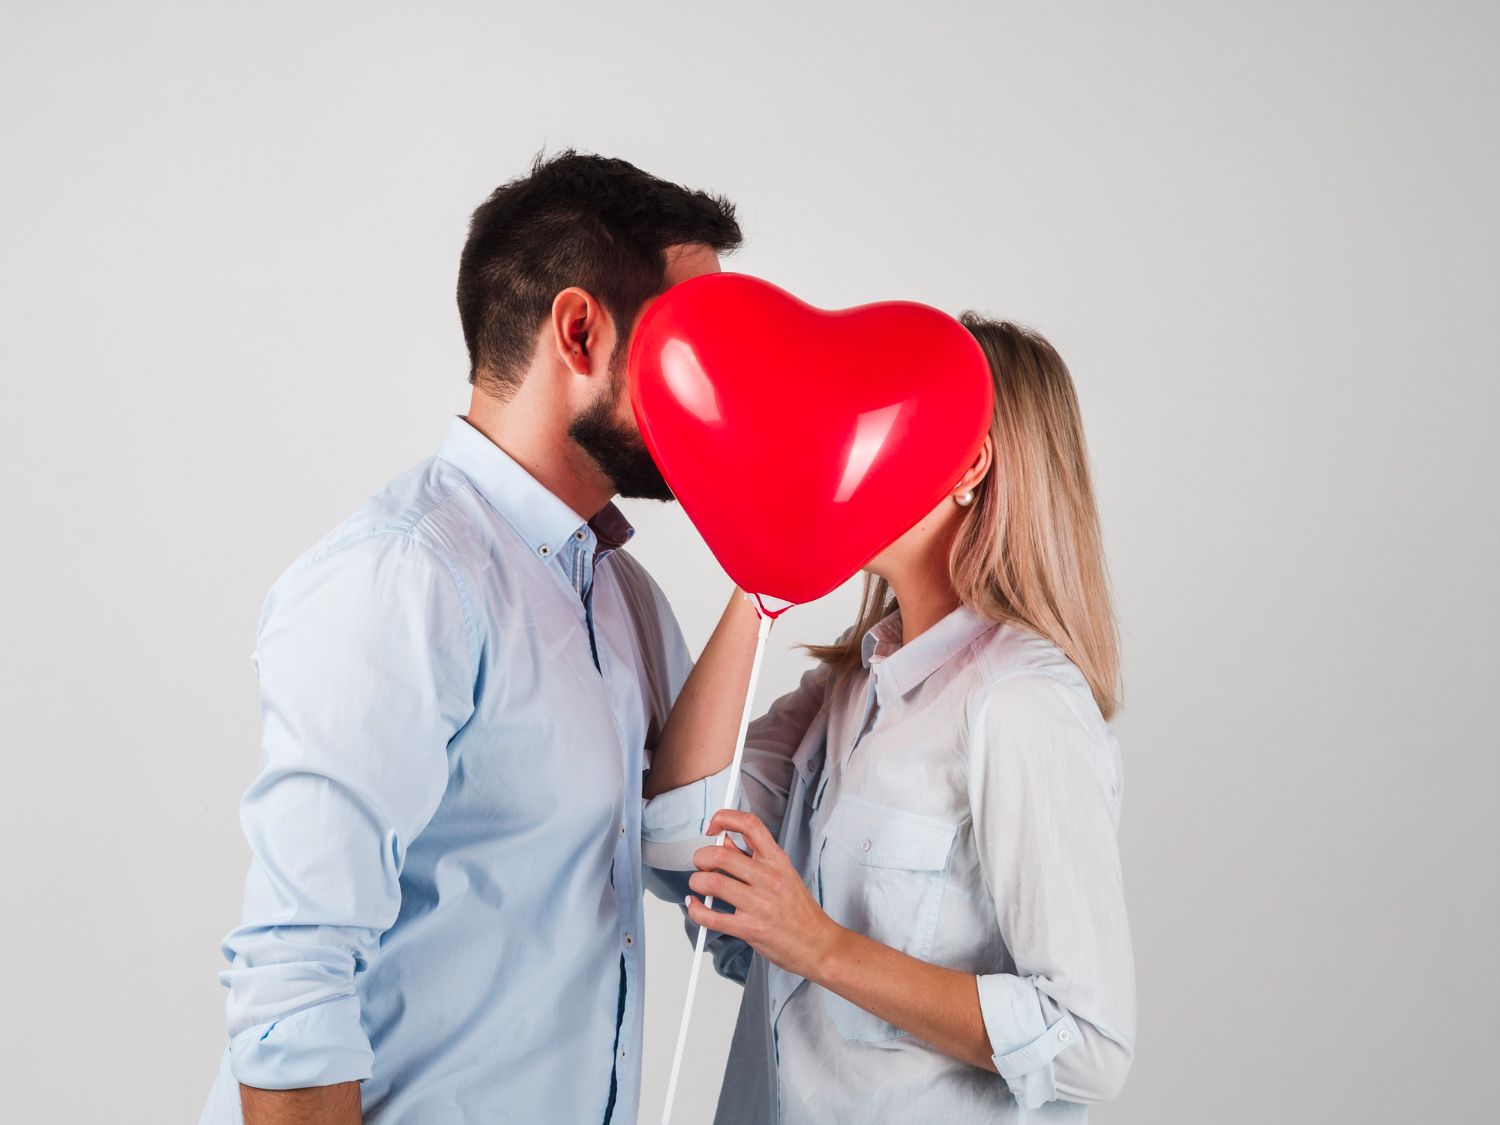 Siete regalos sexuales para un San Valentín 'caliente' - Diario Libre